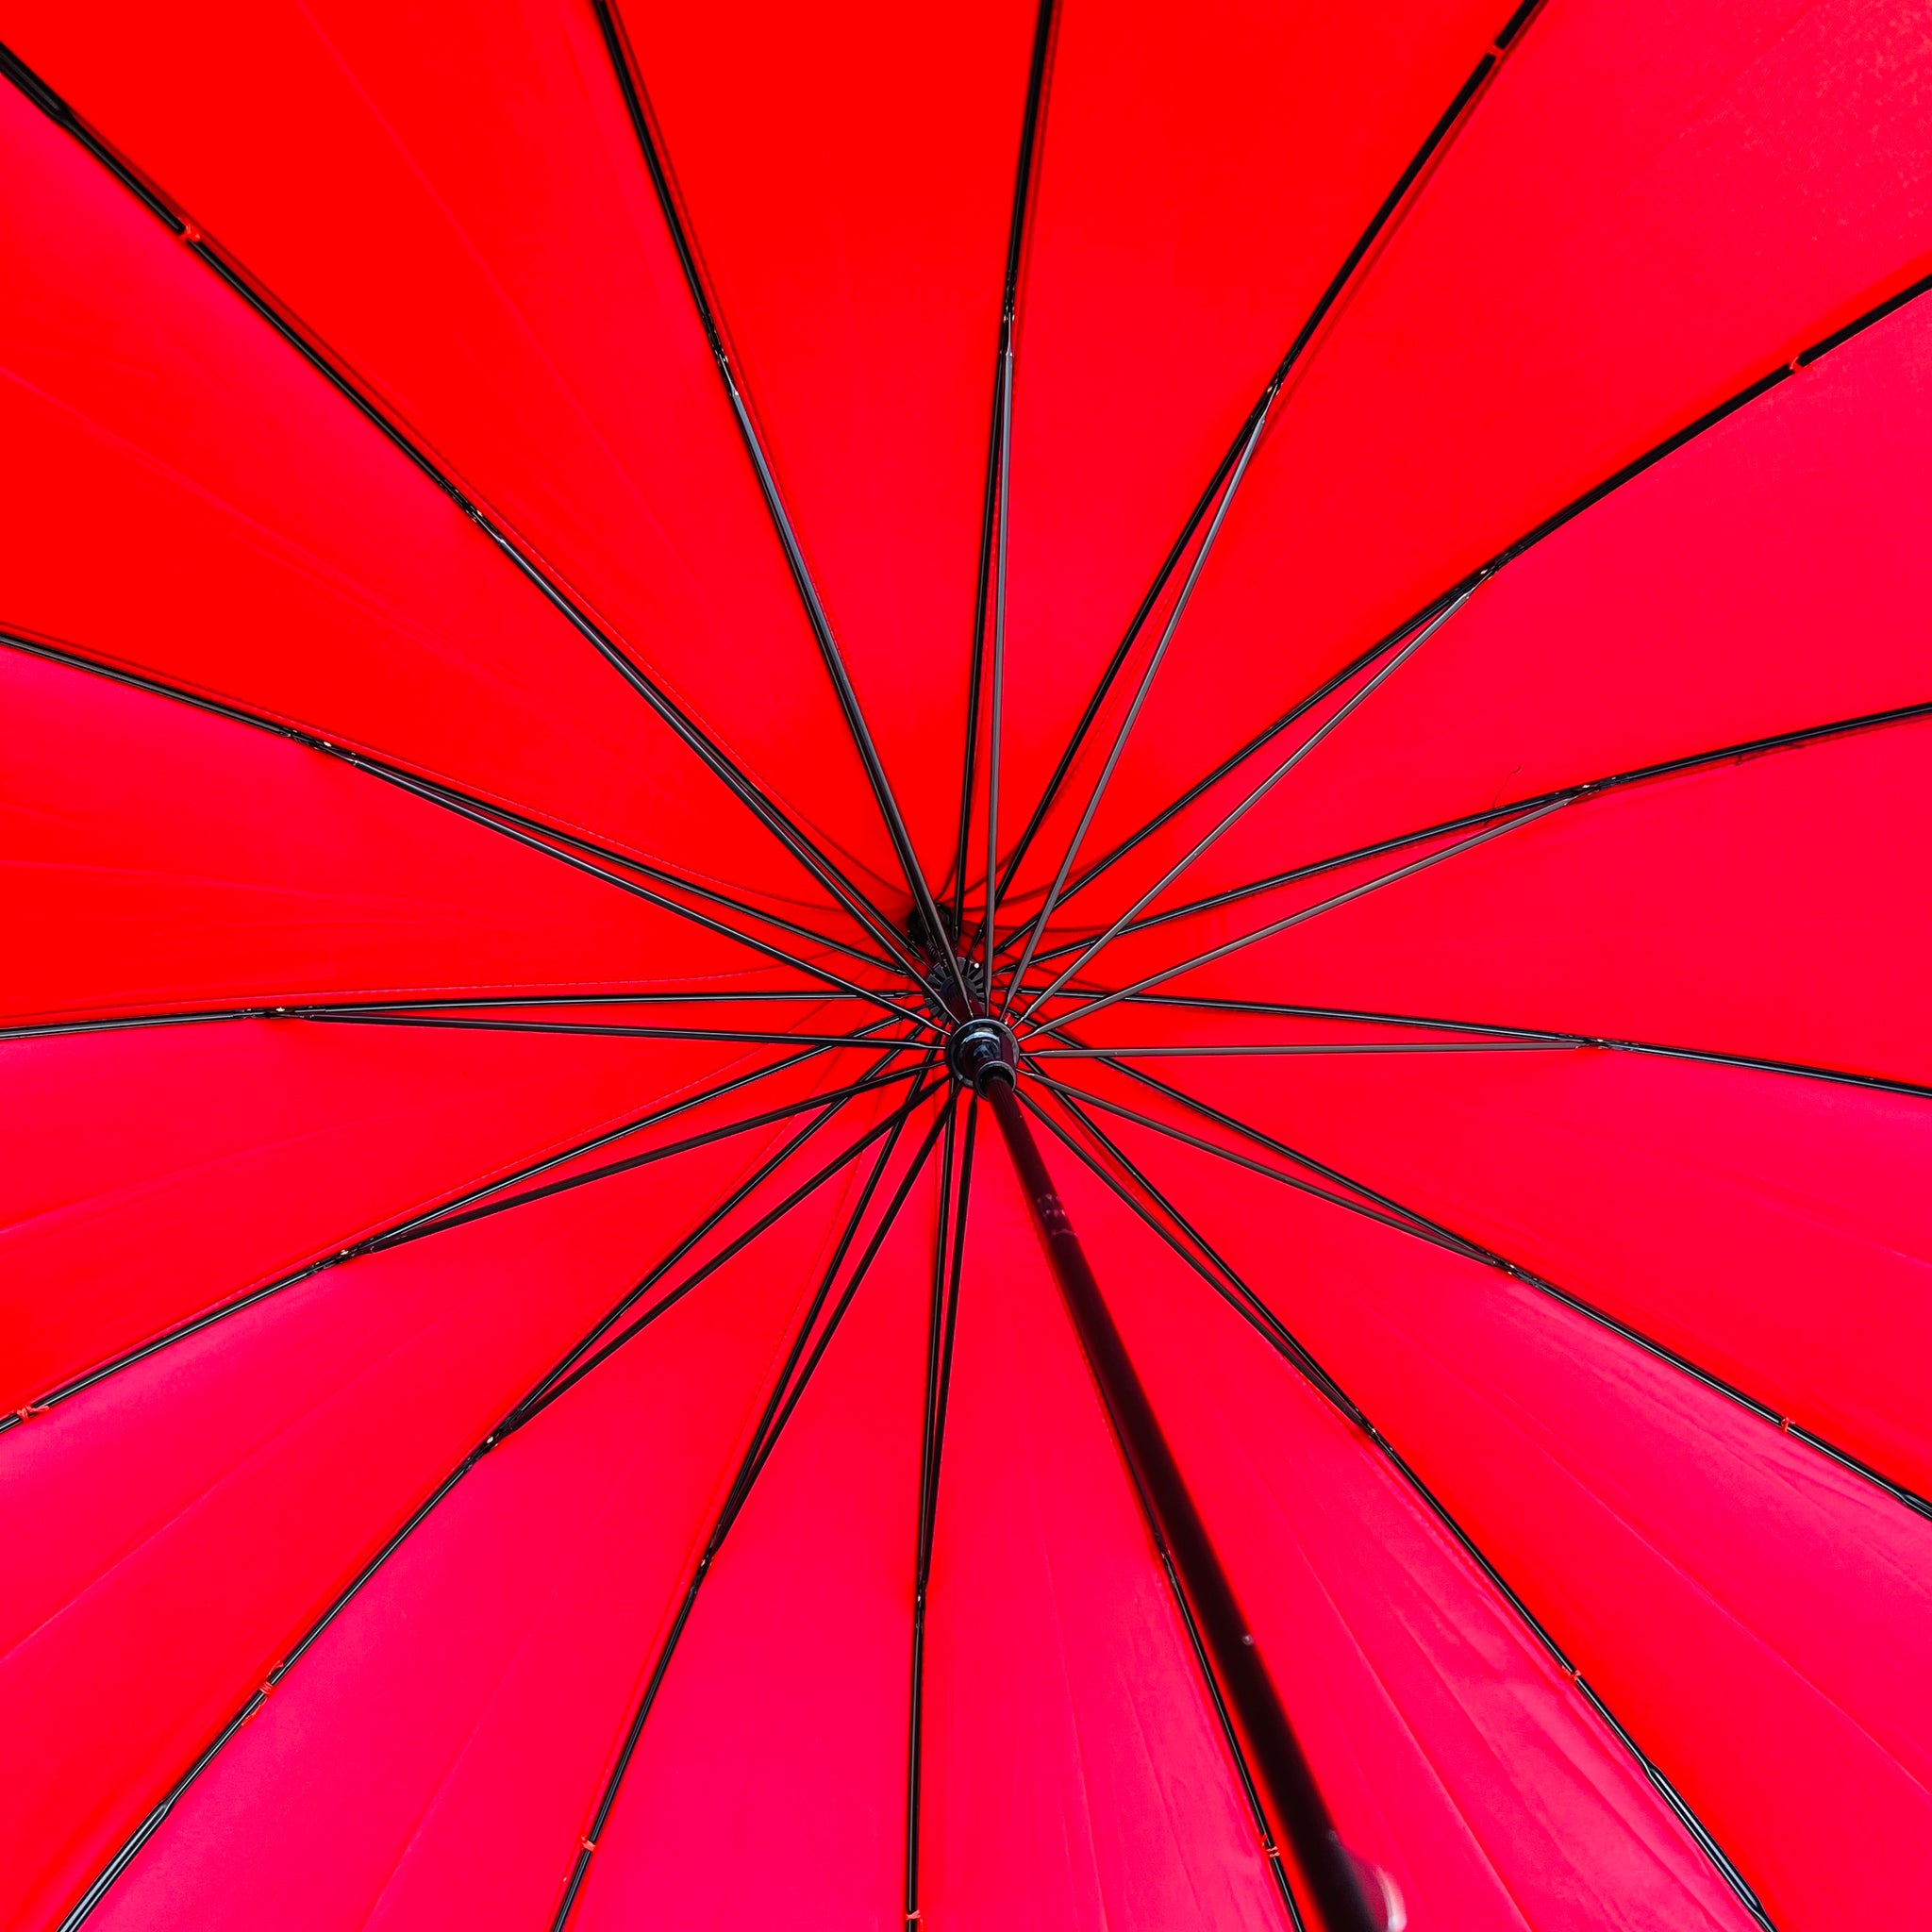 Umbrella - Pagoda Ribbed - Red